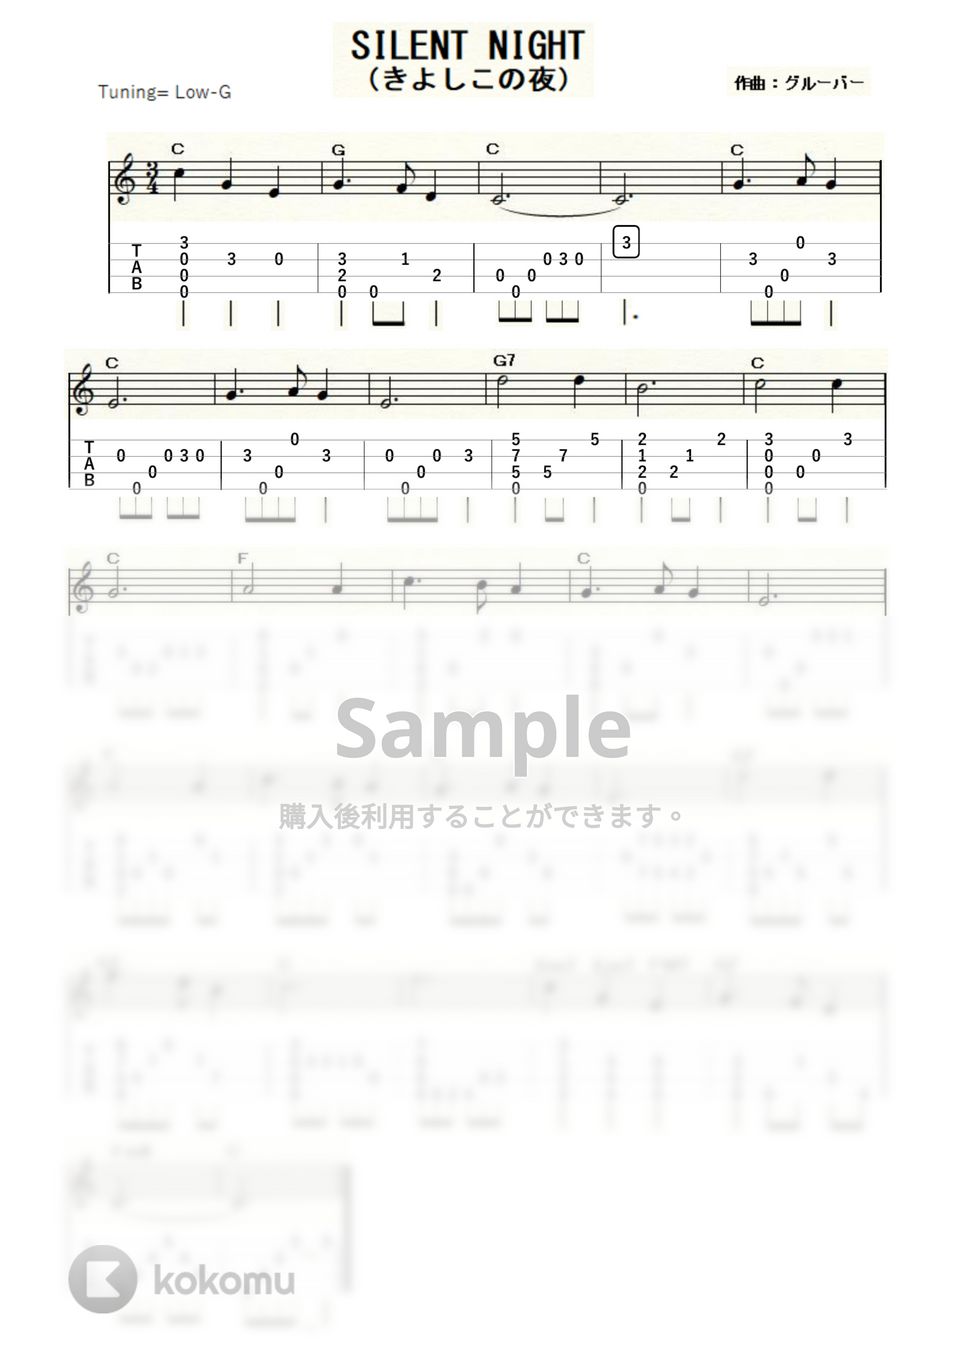 クリスマスソング - きよしこの夜 (ｳｸﾚﾚｿﾛ / Low-G / 中級) by ukulelepapa